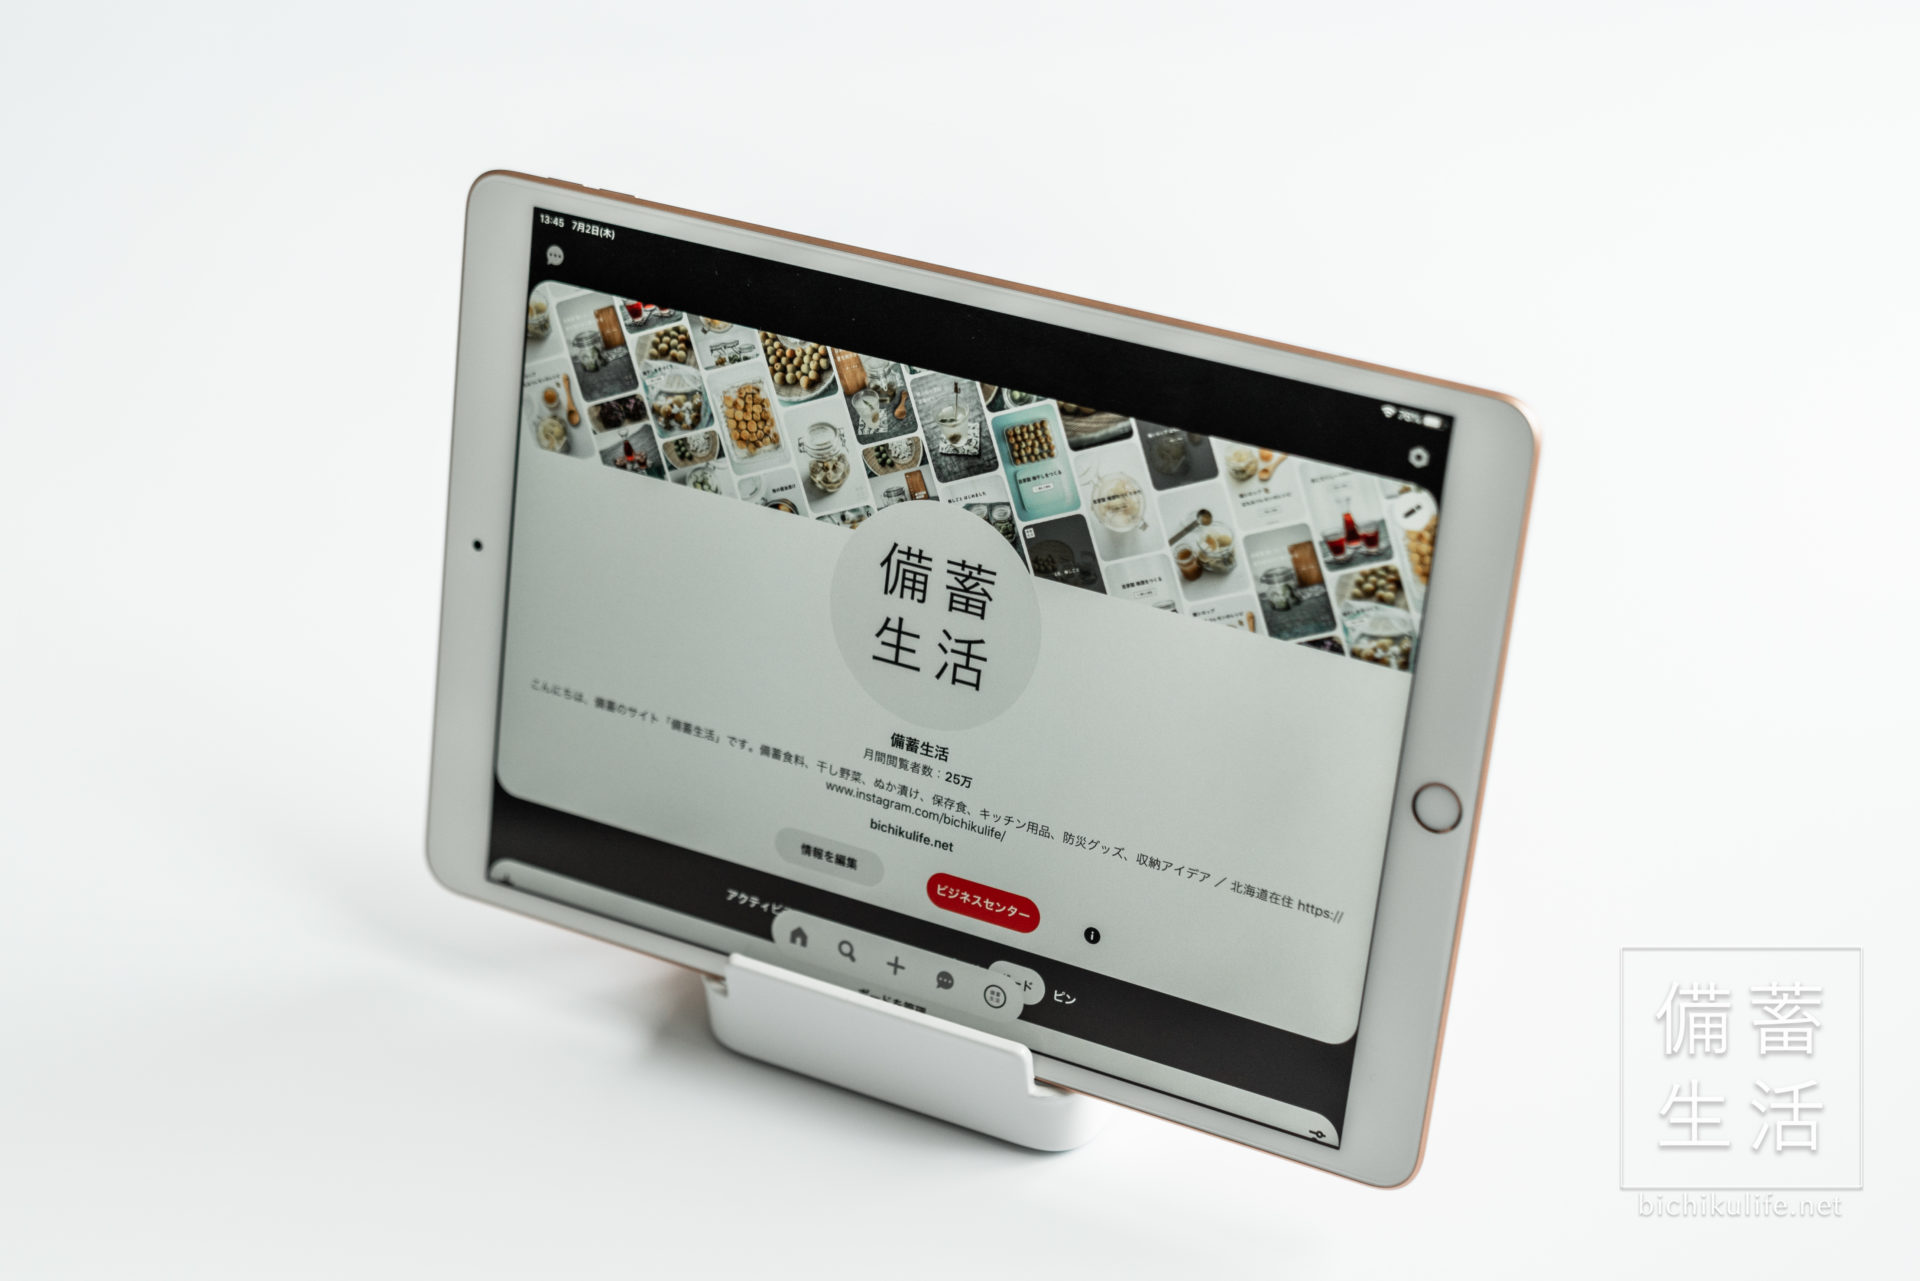 山崎実業 おたま&鍋ふたスタンド tower、iPadスタンドの使用例